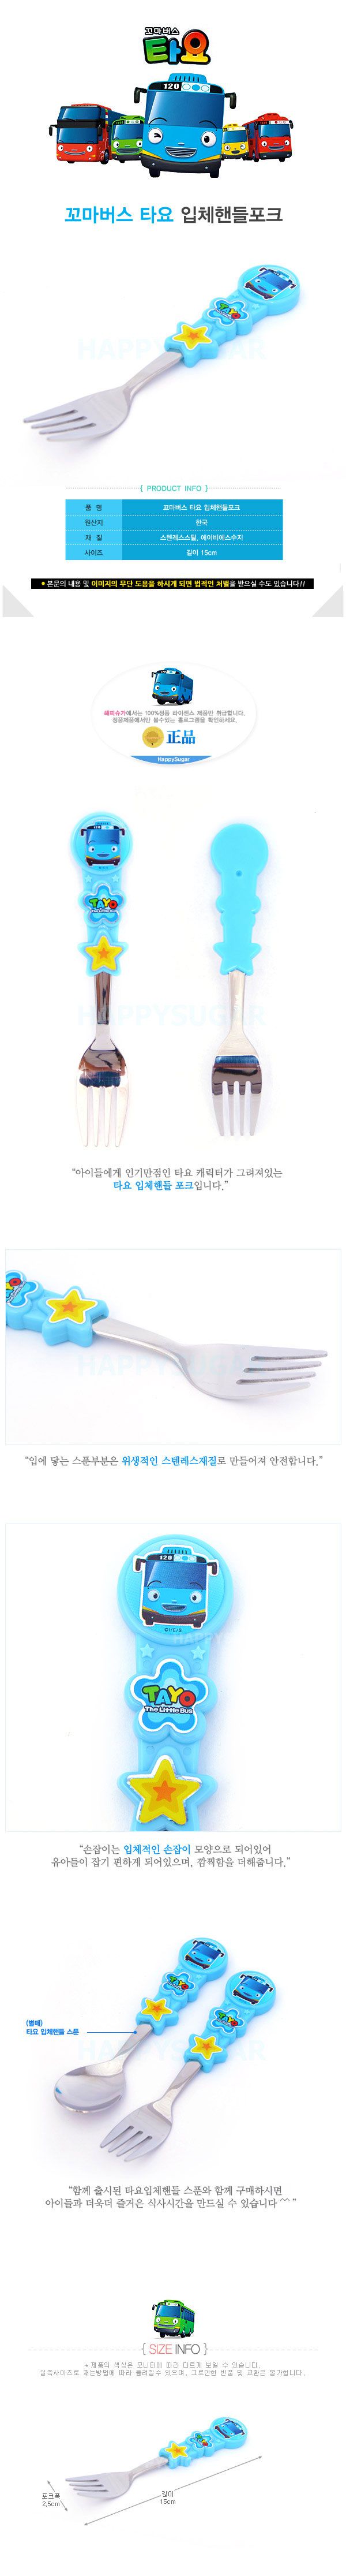 韓國製小巴士TAYO兒童不銹鋼餐具-叉子